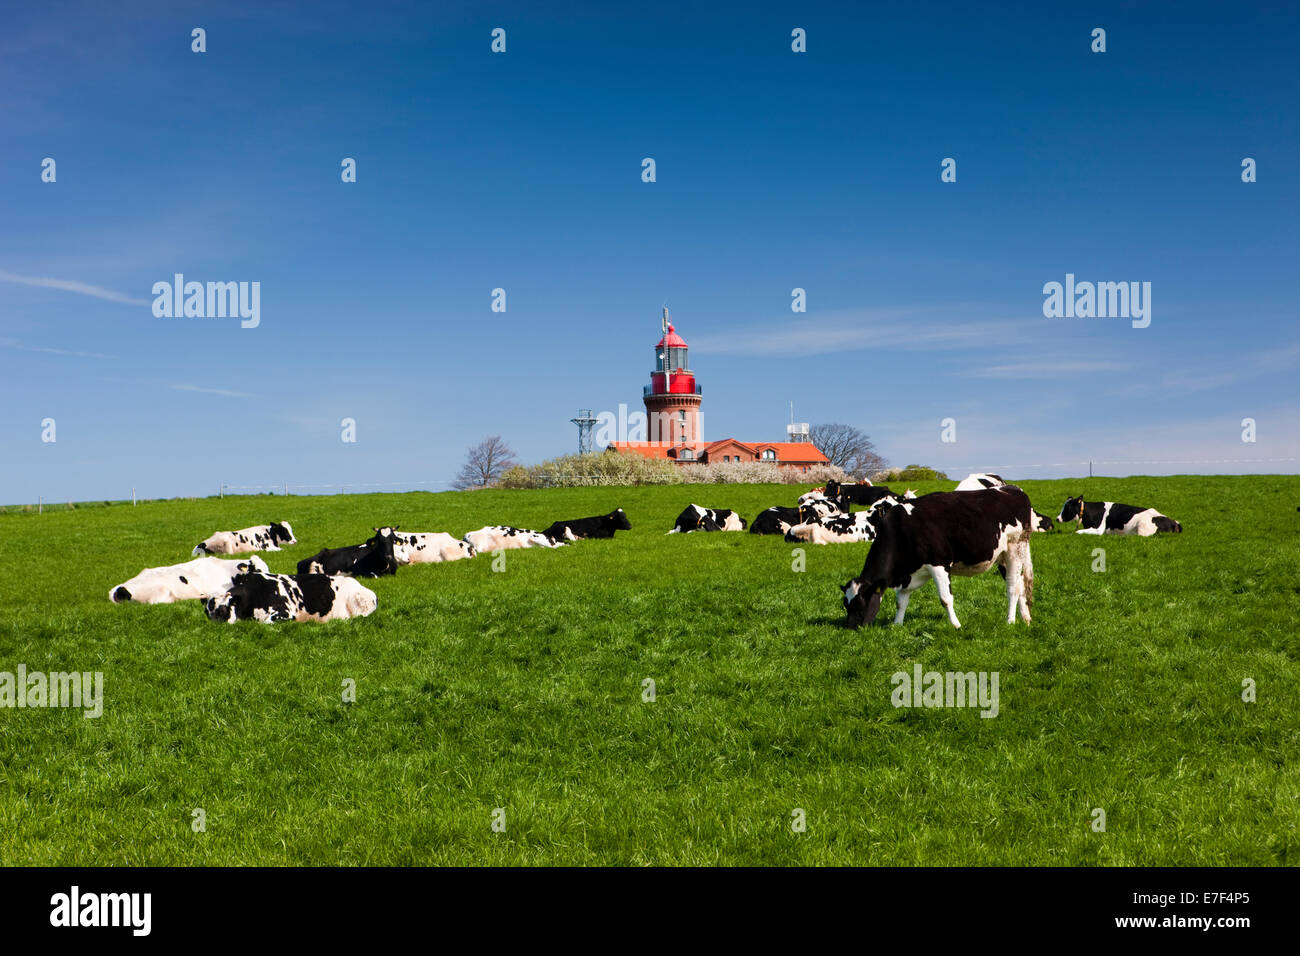 Le pâturage des vaches en face de l'Bütgenbacher Hof phare, Bütgenbacher Hof, Mecklembourg-Poméranie-Occidentale, Allemagne Banque D'Images